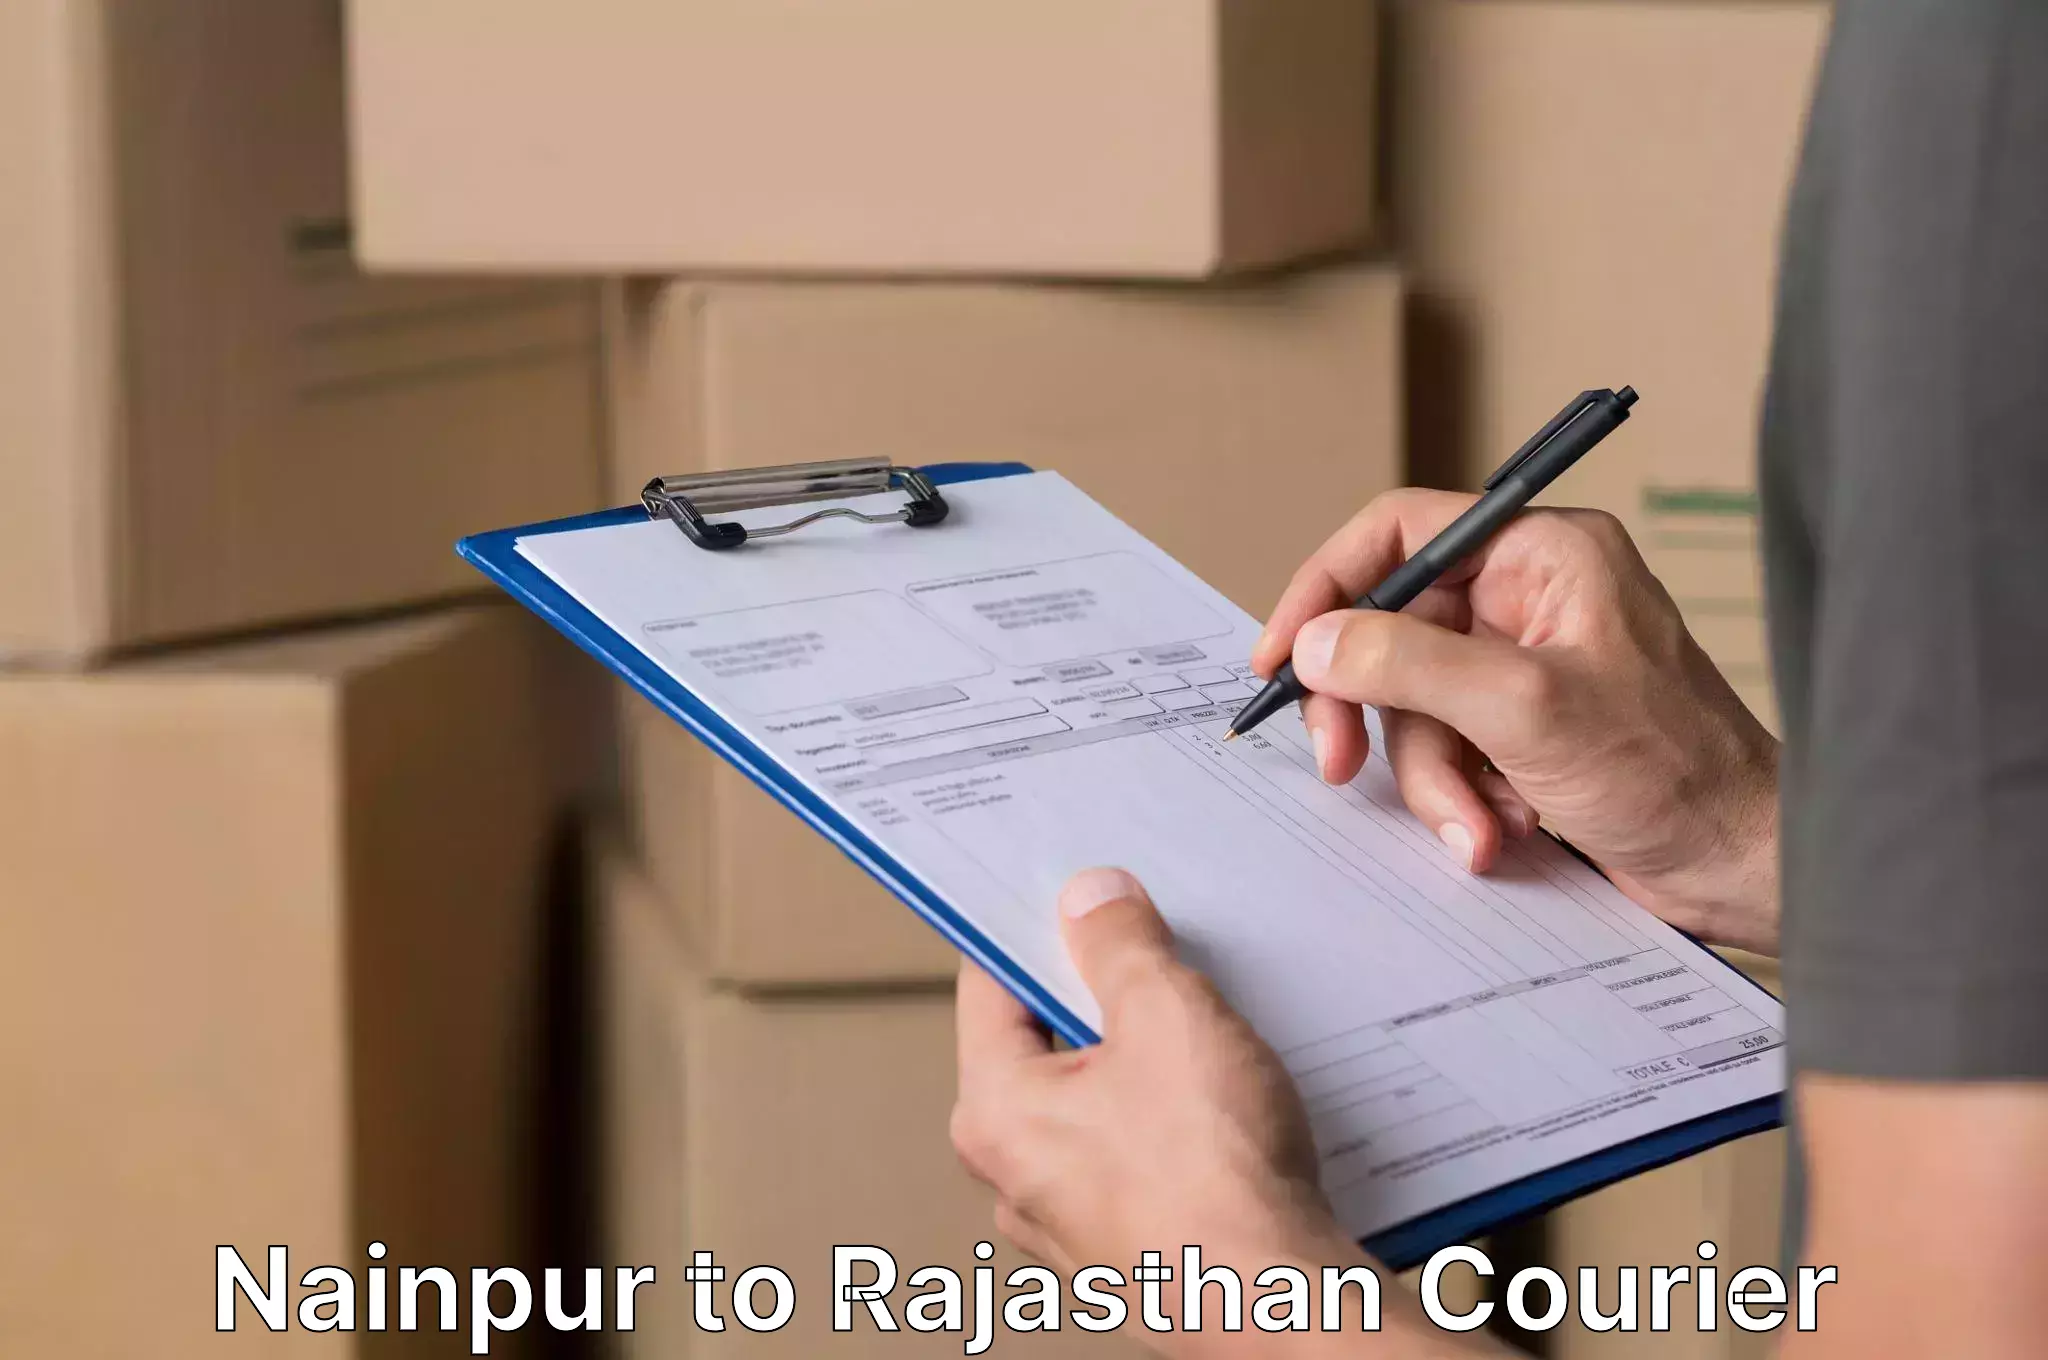 Professional moving strategies Nainpur to Bikaner